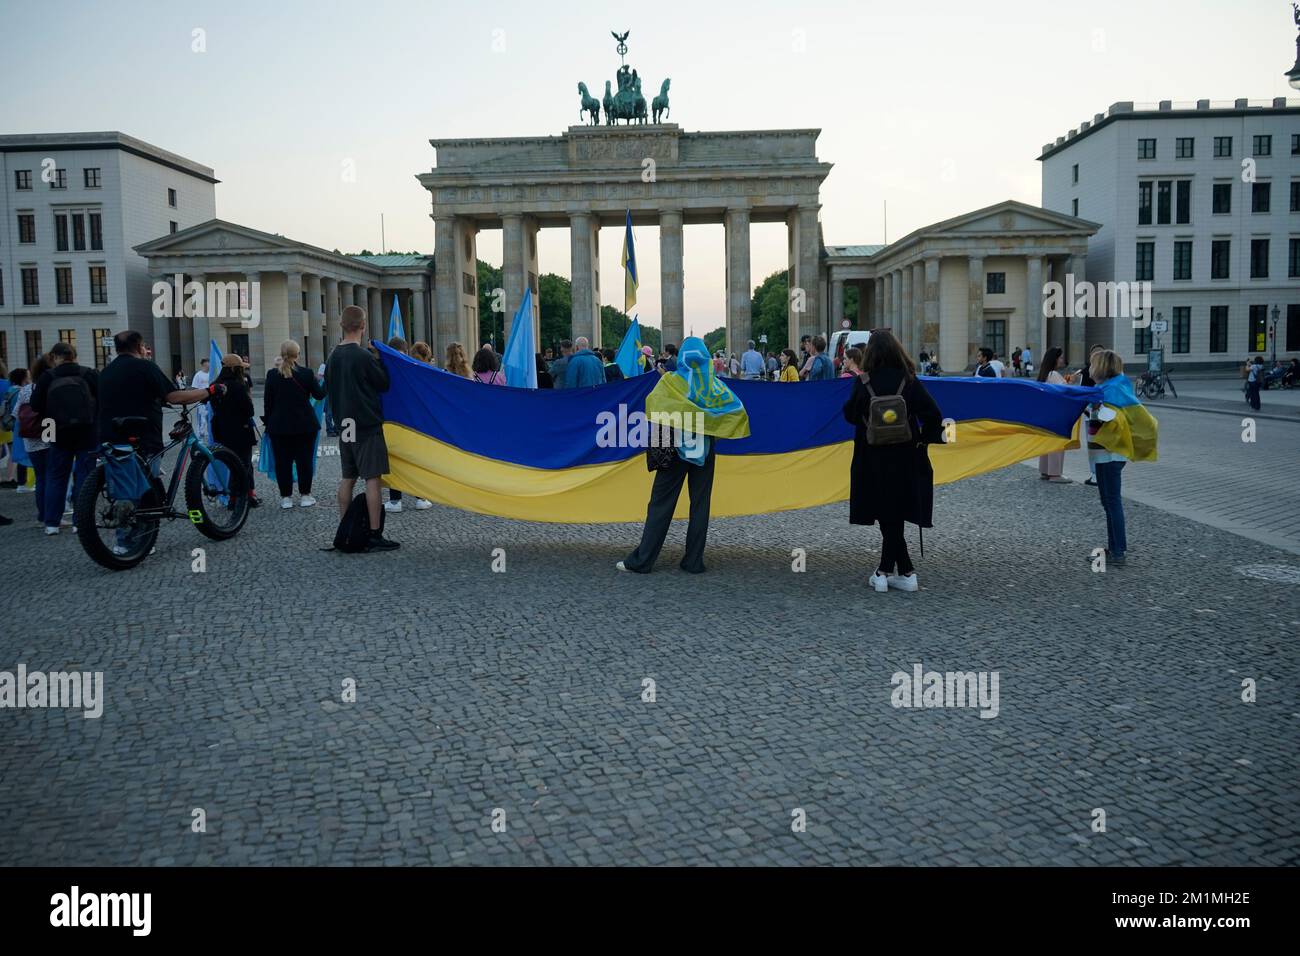 Impressionen - Demonstration gegen die russische Invasion der Ukraine, Pariser Platz, Brandenburger Tor, 20. Mai 2022, Berlin / impressions - demonstr Stock Photo